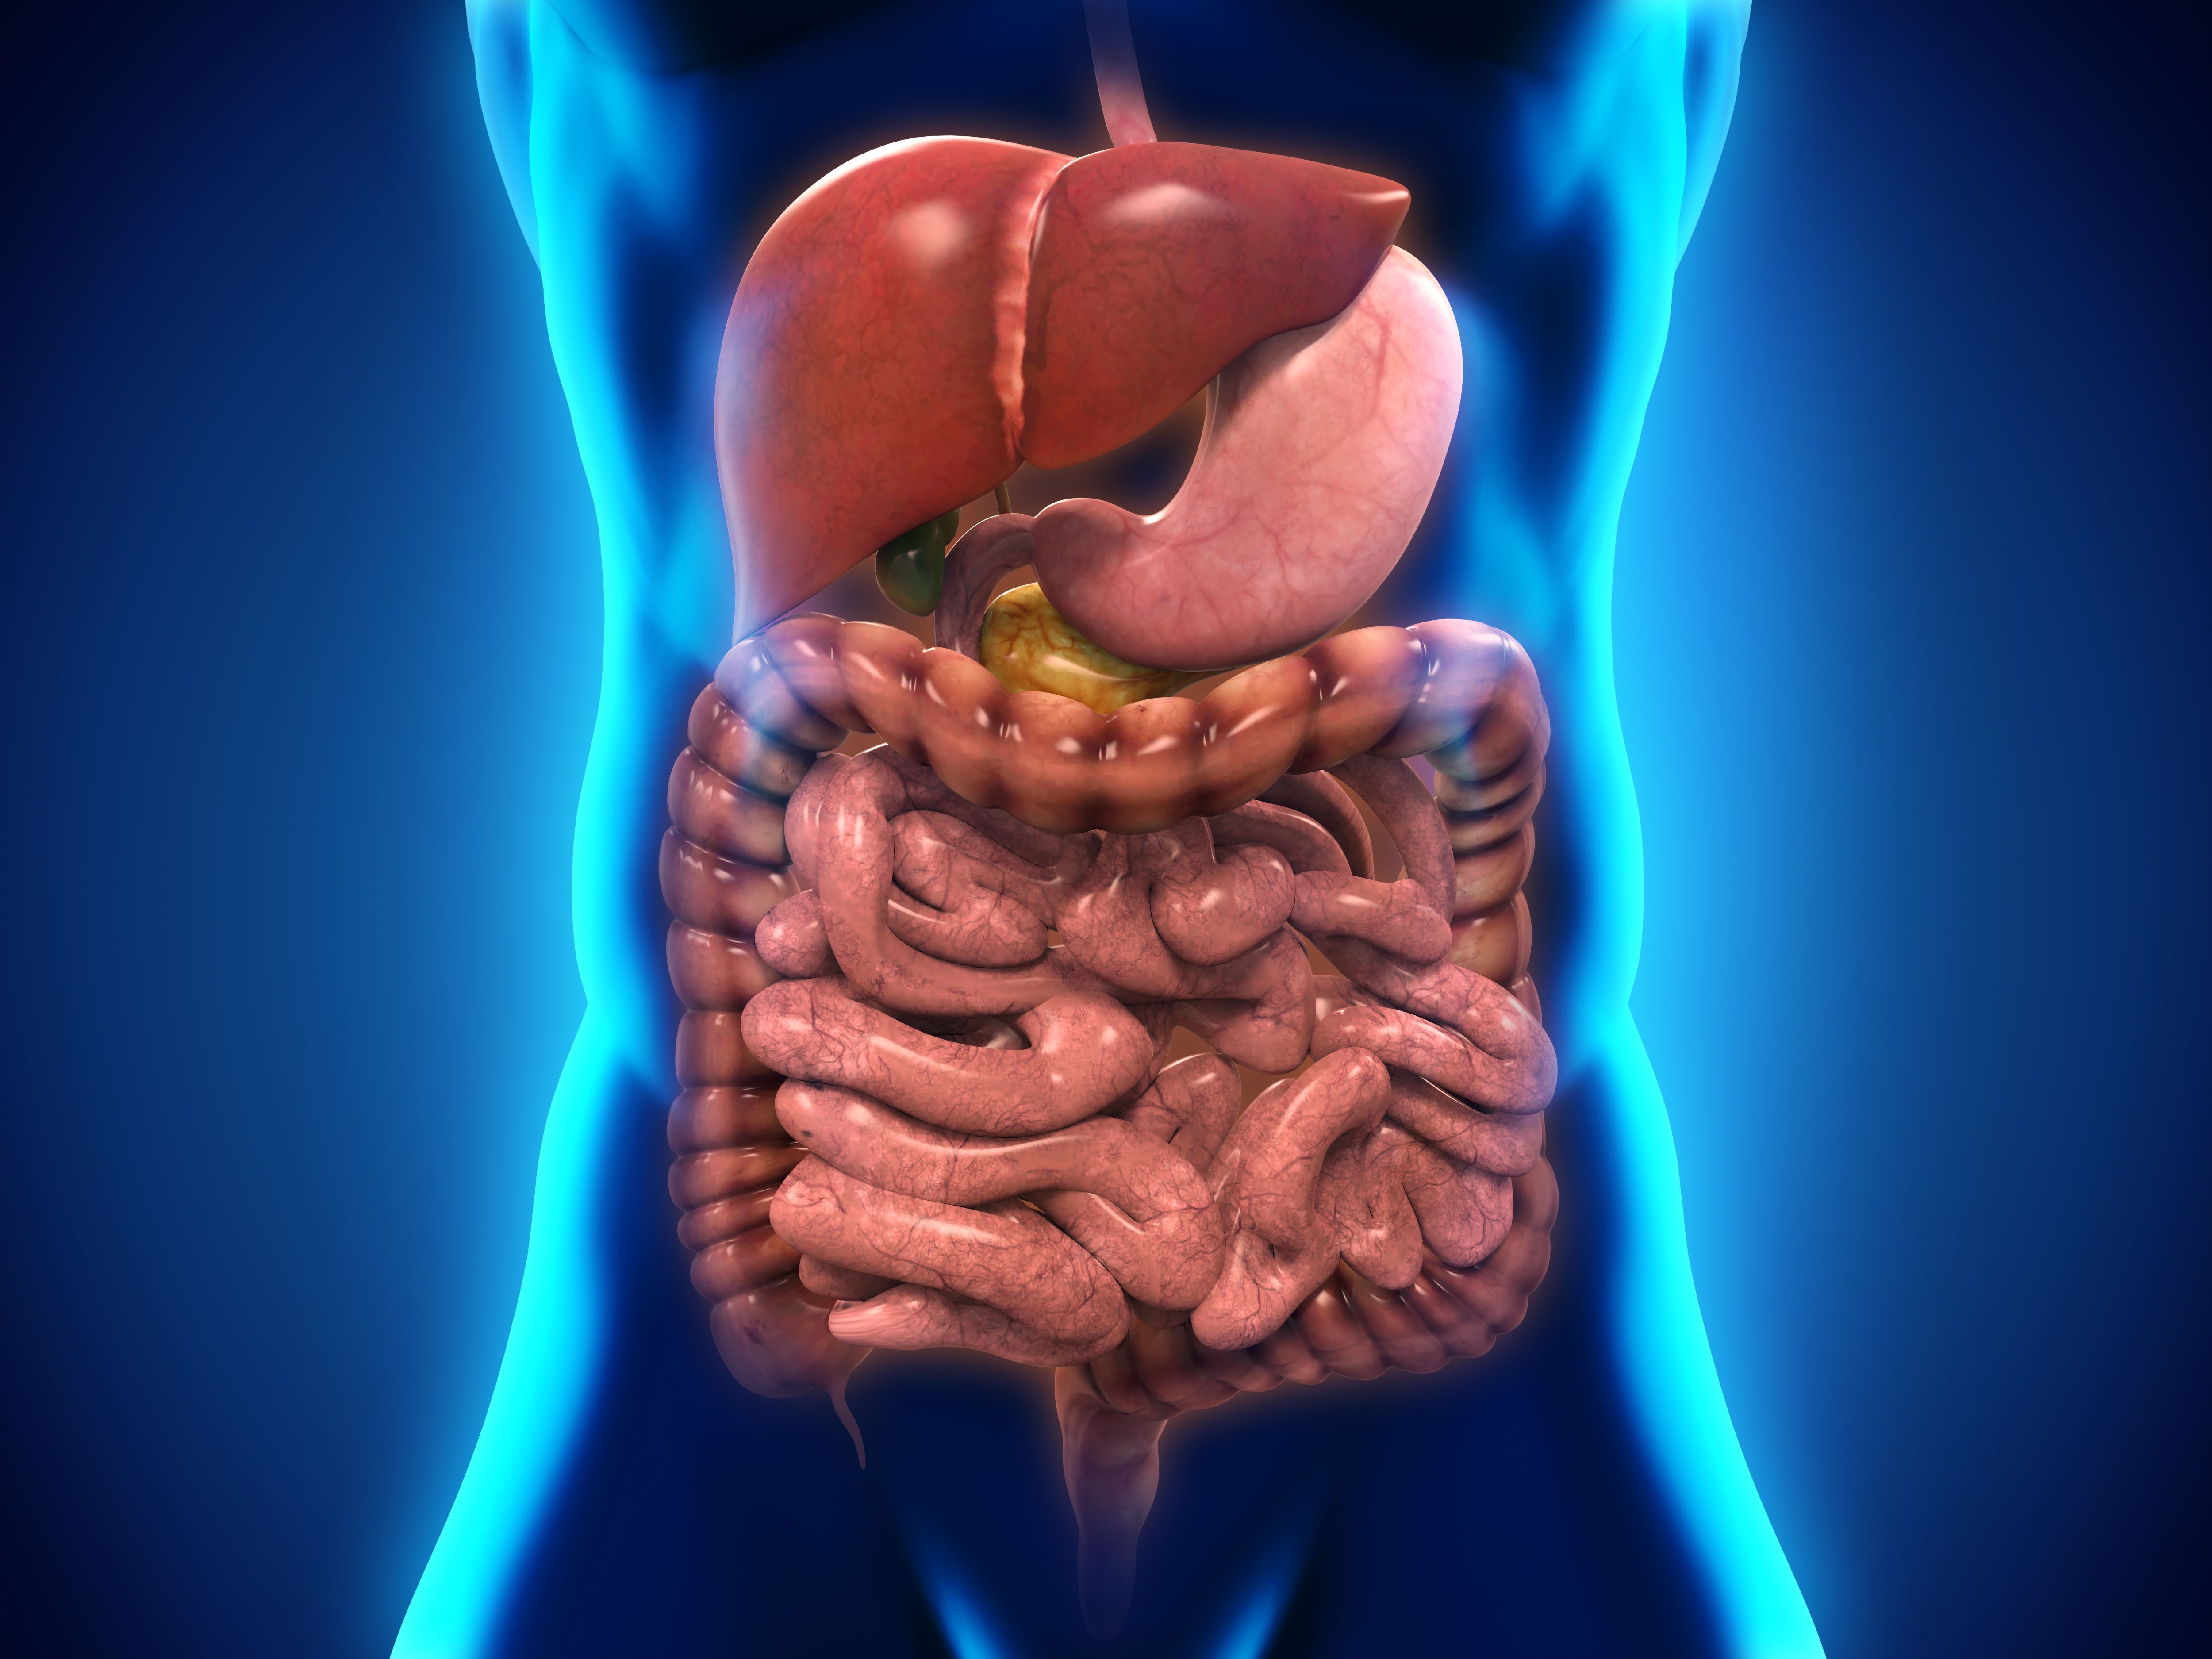 Кишечный тракт. Пищеварительная система ЖКТ человека. Желудочно-кишечный тракт человека анатомия. Пищеварительный тракт человека. ЖКТ системы пищеварения органы.